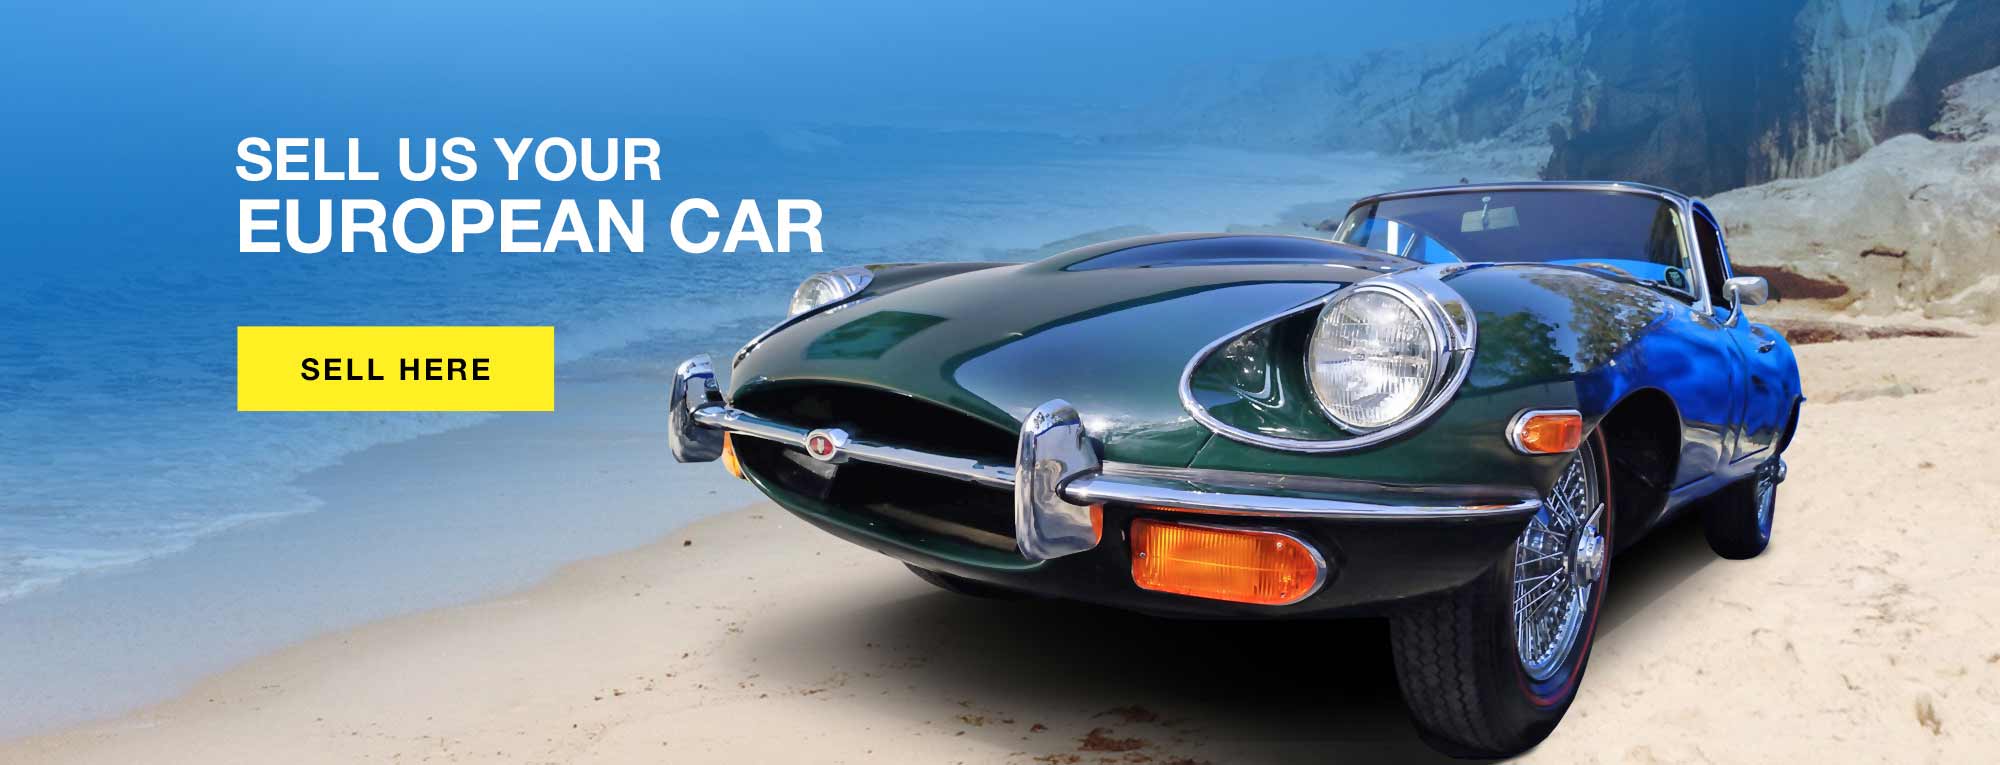 sell a classic car european car